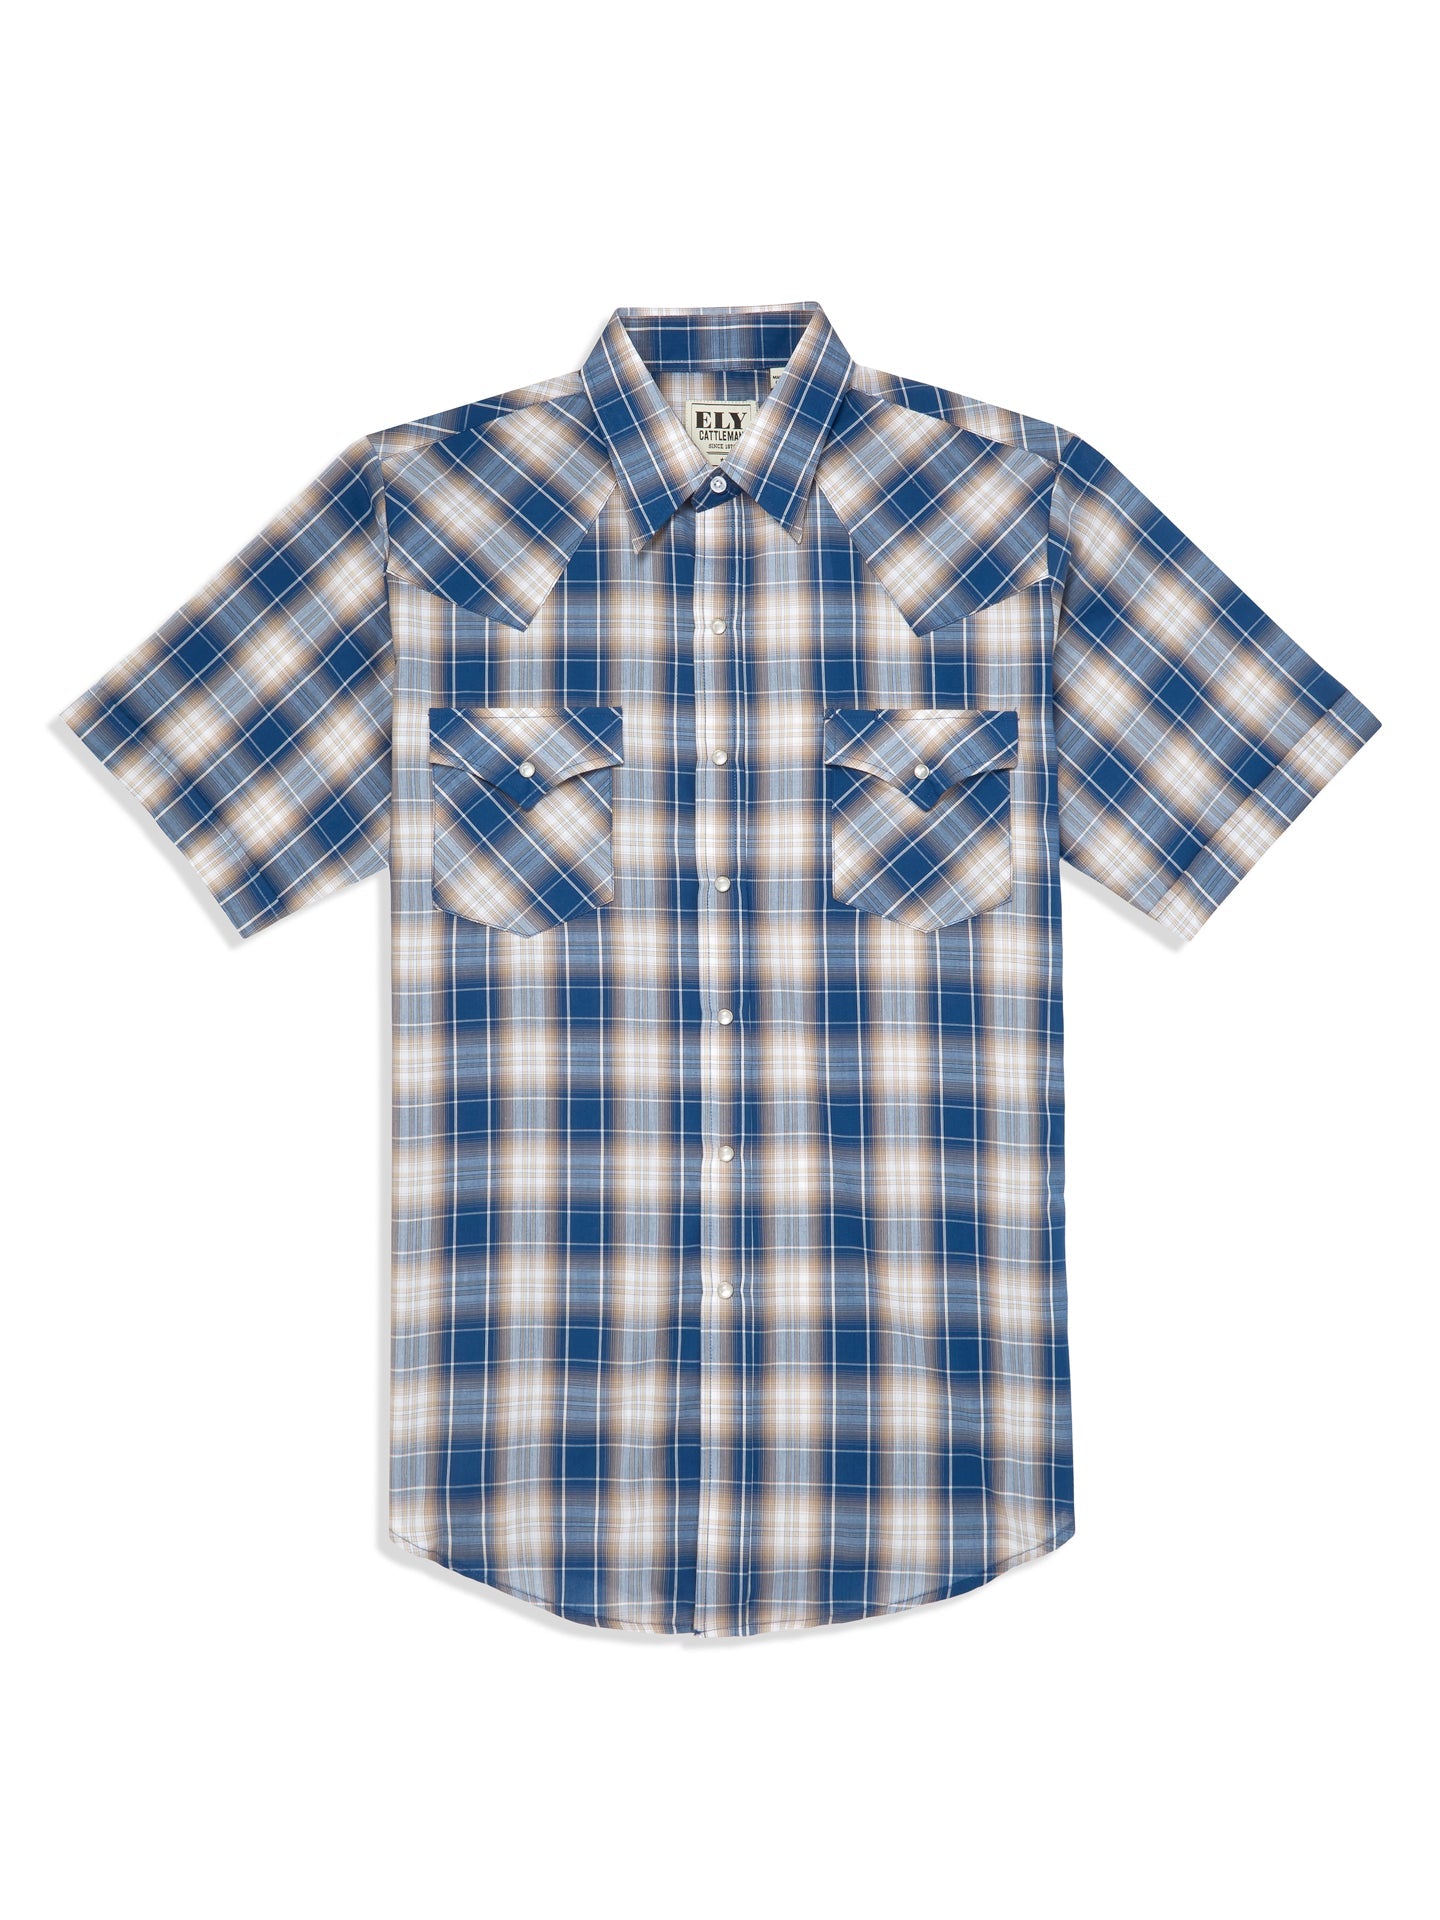 Denim Blue & White Plaid Short Sleeve Shirt